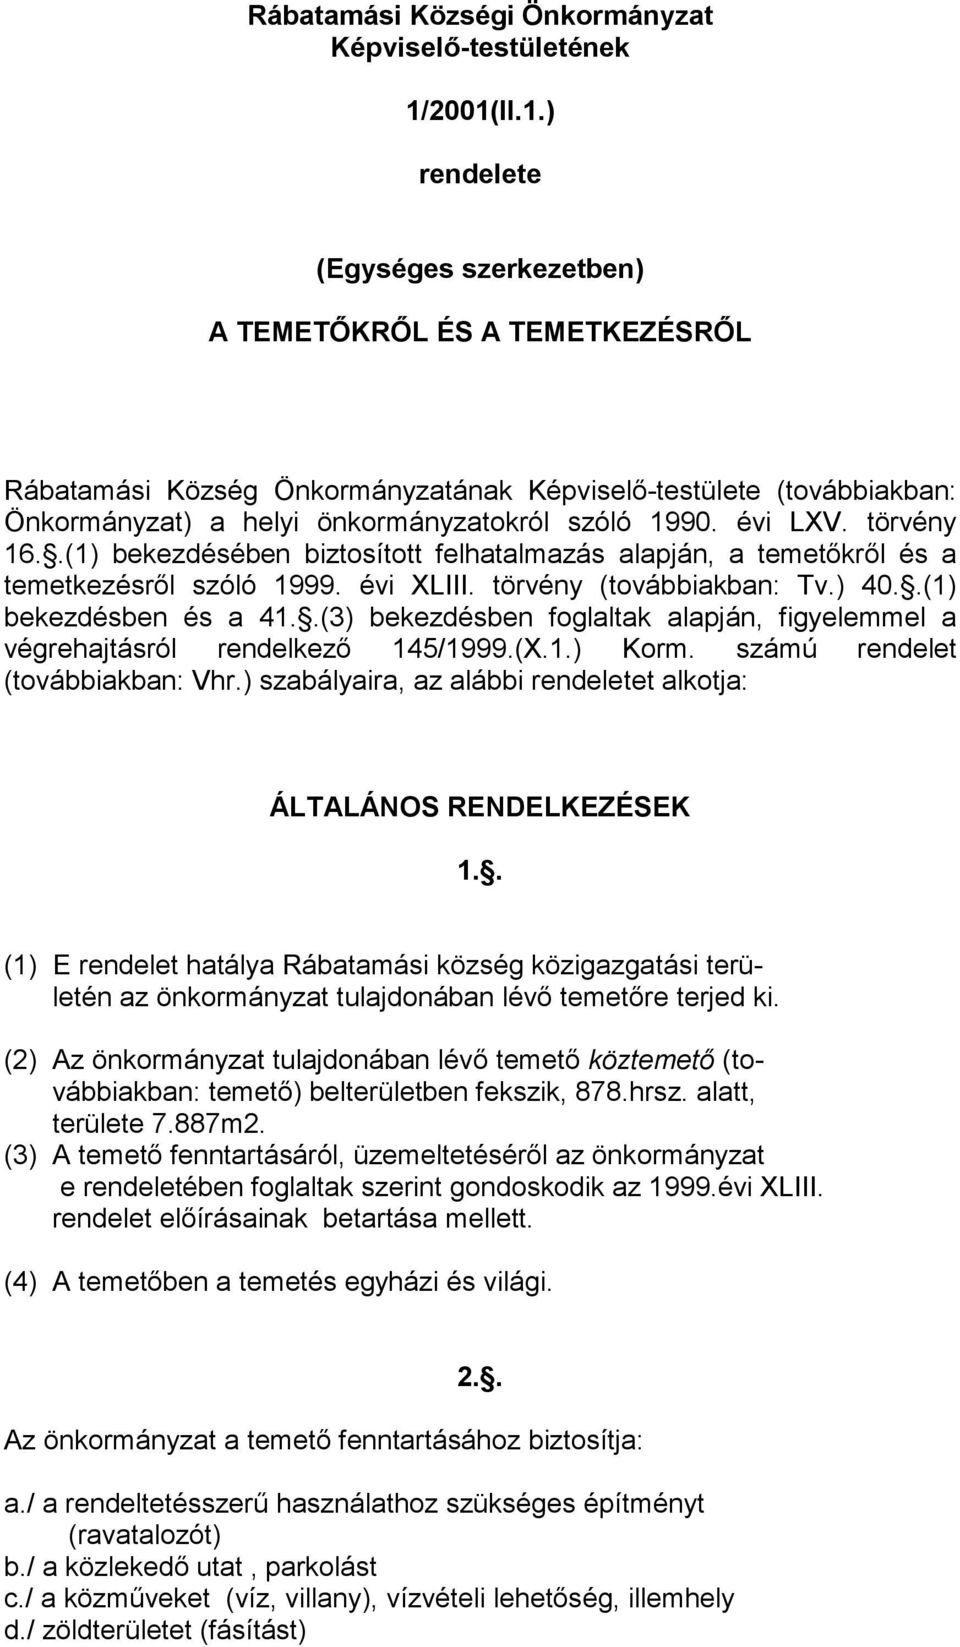 évi LXV. törvény 16..(1) bekezdésében biztosított felhatalmazás alapján, a temetıkrıl és a temetkezésrıl szóló 1999. évi XLIII. törvény (továbbiakban: Tv.) 40..(1) bekezdésben és a 41.